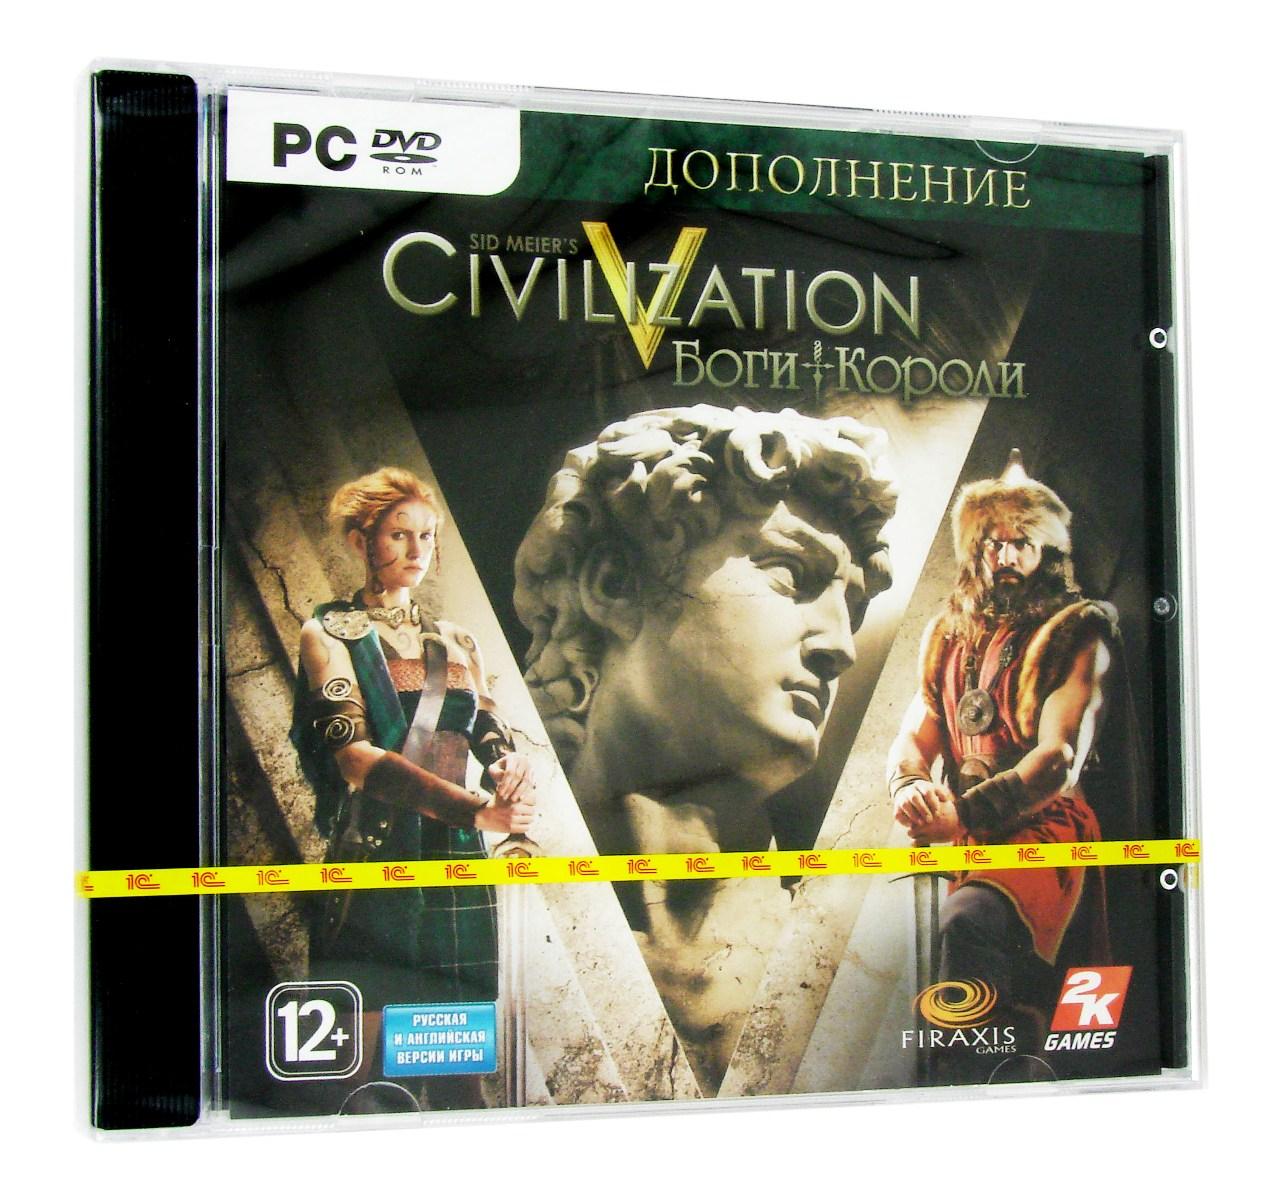 Компьютерный компакт-диск Sid Meier’s Civilization V: Боги и короли (ПК), фирма "1С- Софтклаб", 1DVD